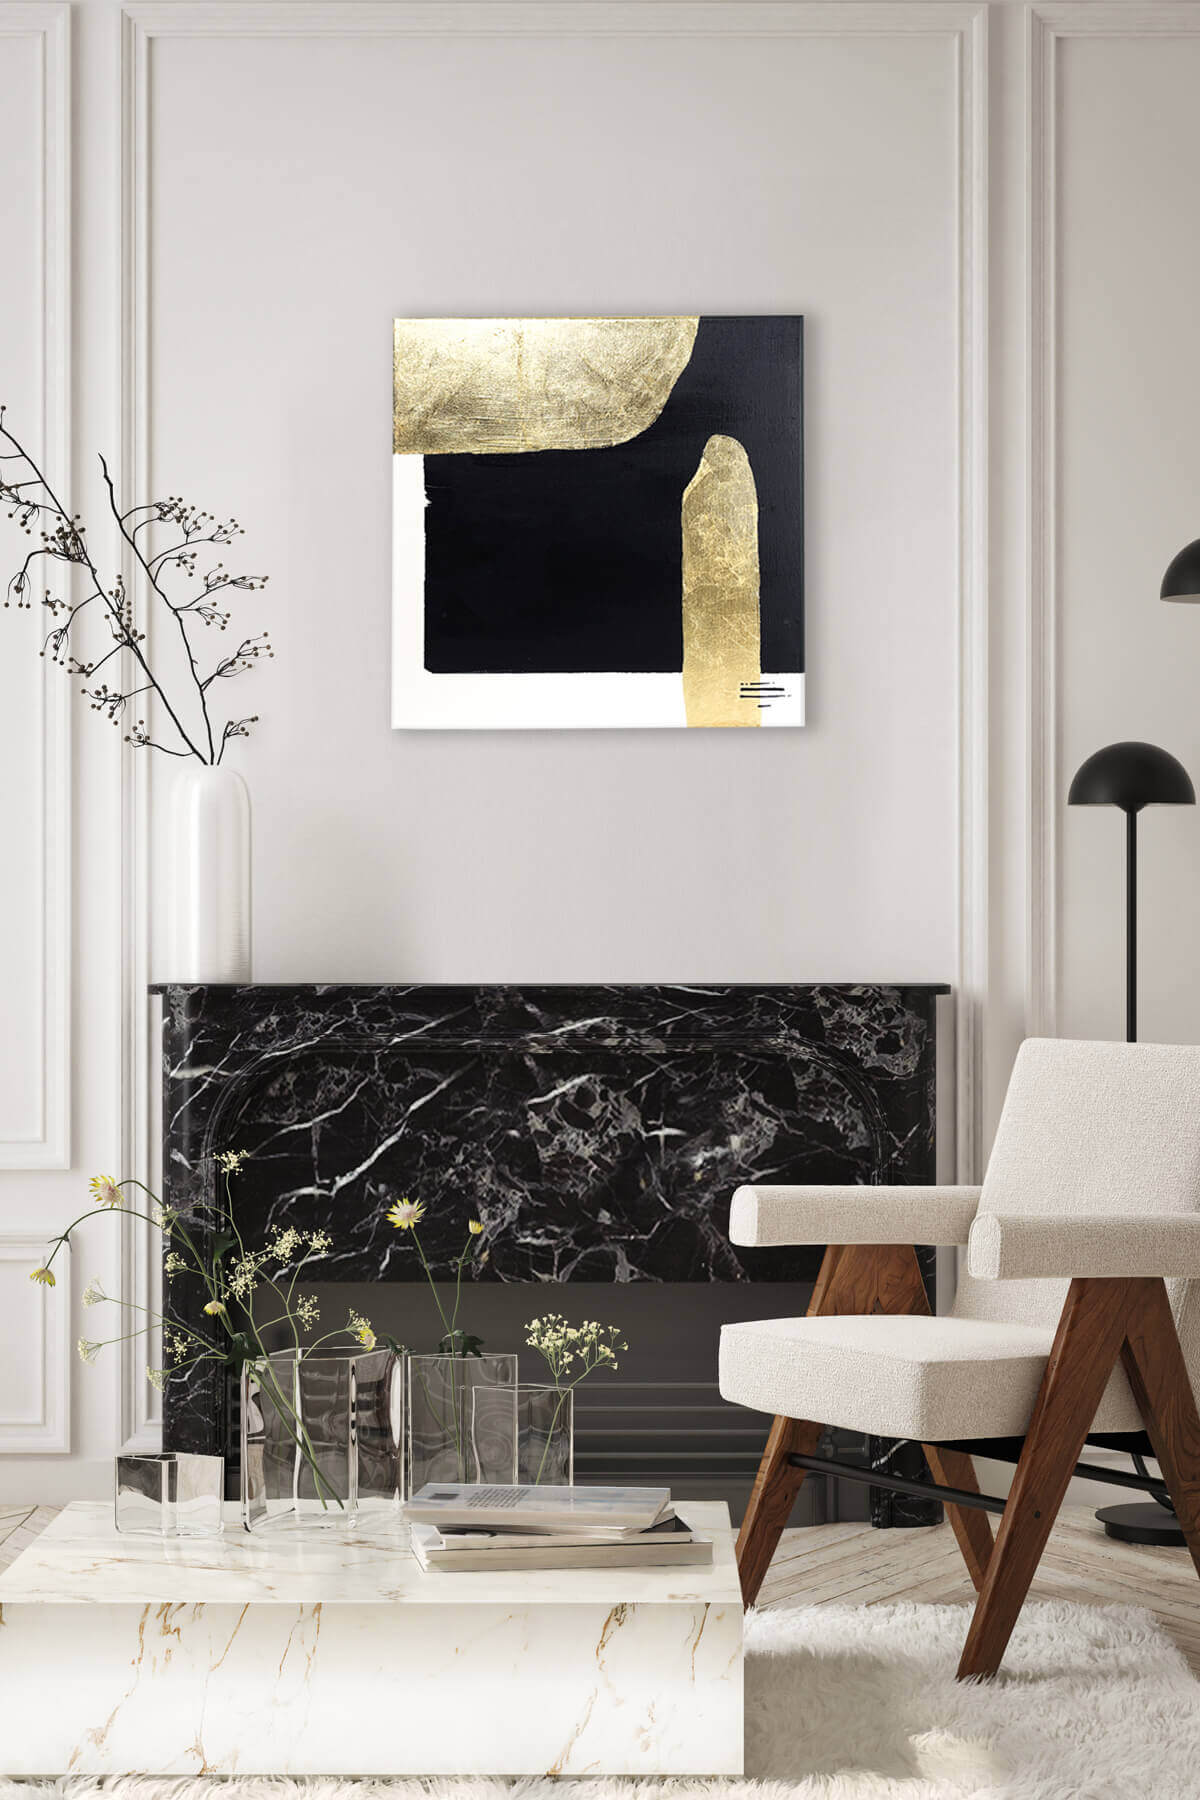 Obraz w salonie nad kominkiem, abstrakcja na płótnie, czarny, biały złoto